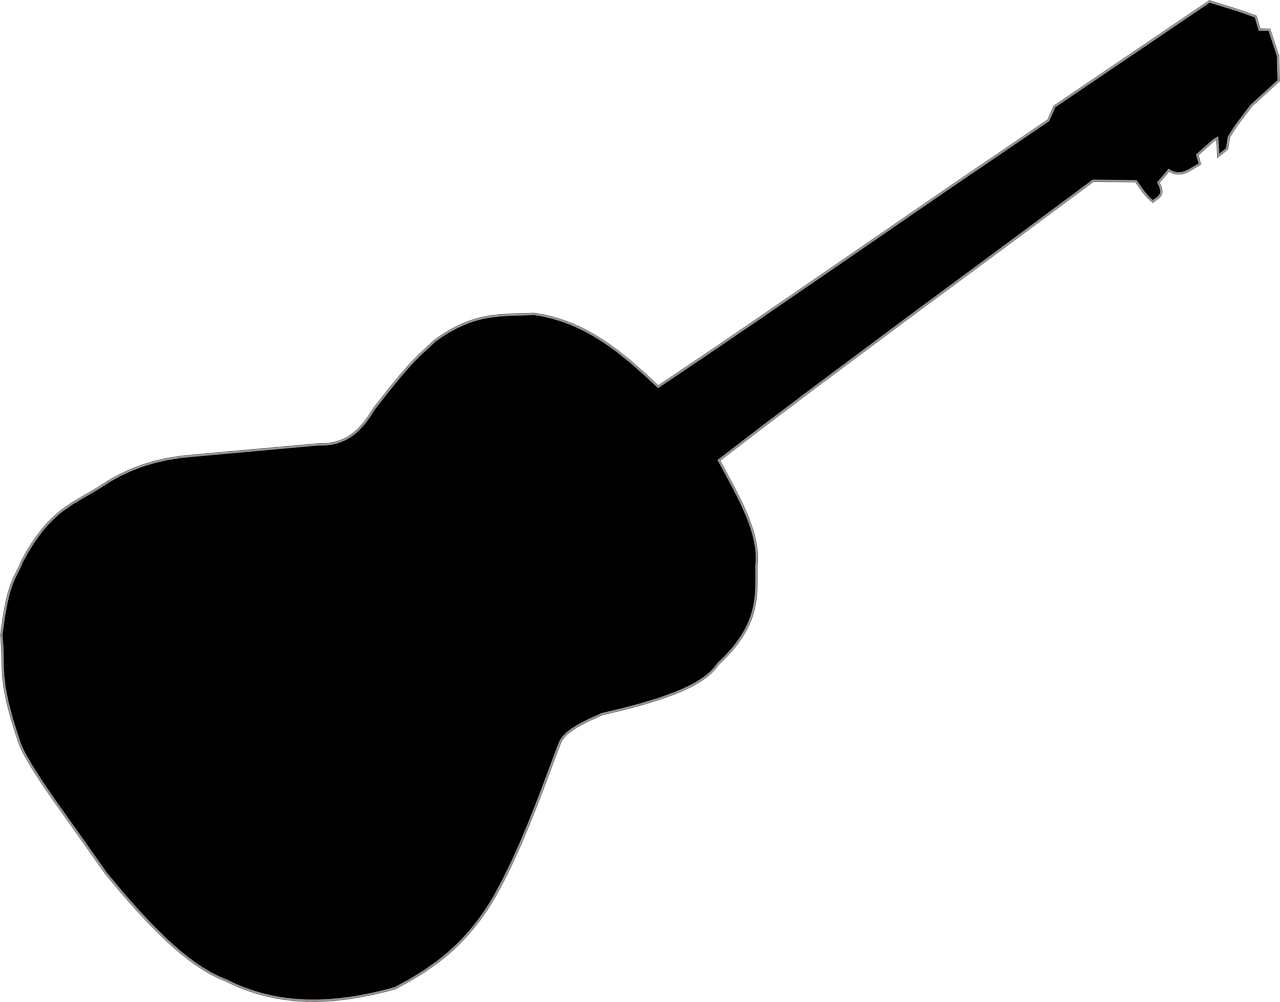 Imagen gratis en pixabay. Youtube clipart guitar